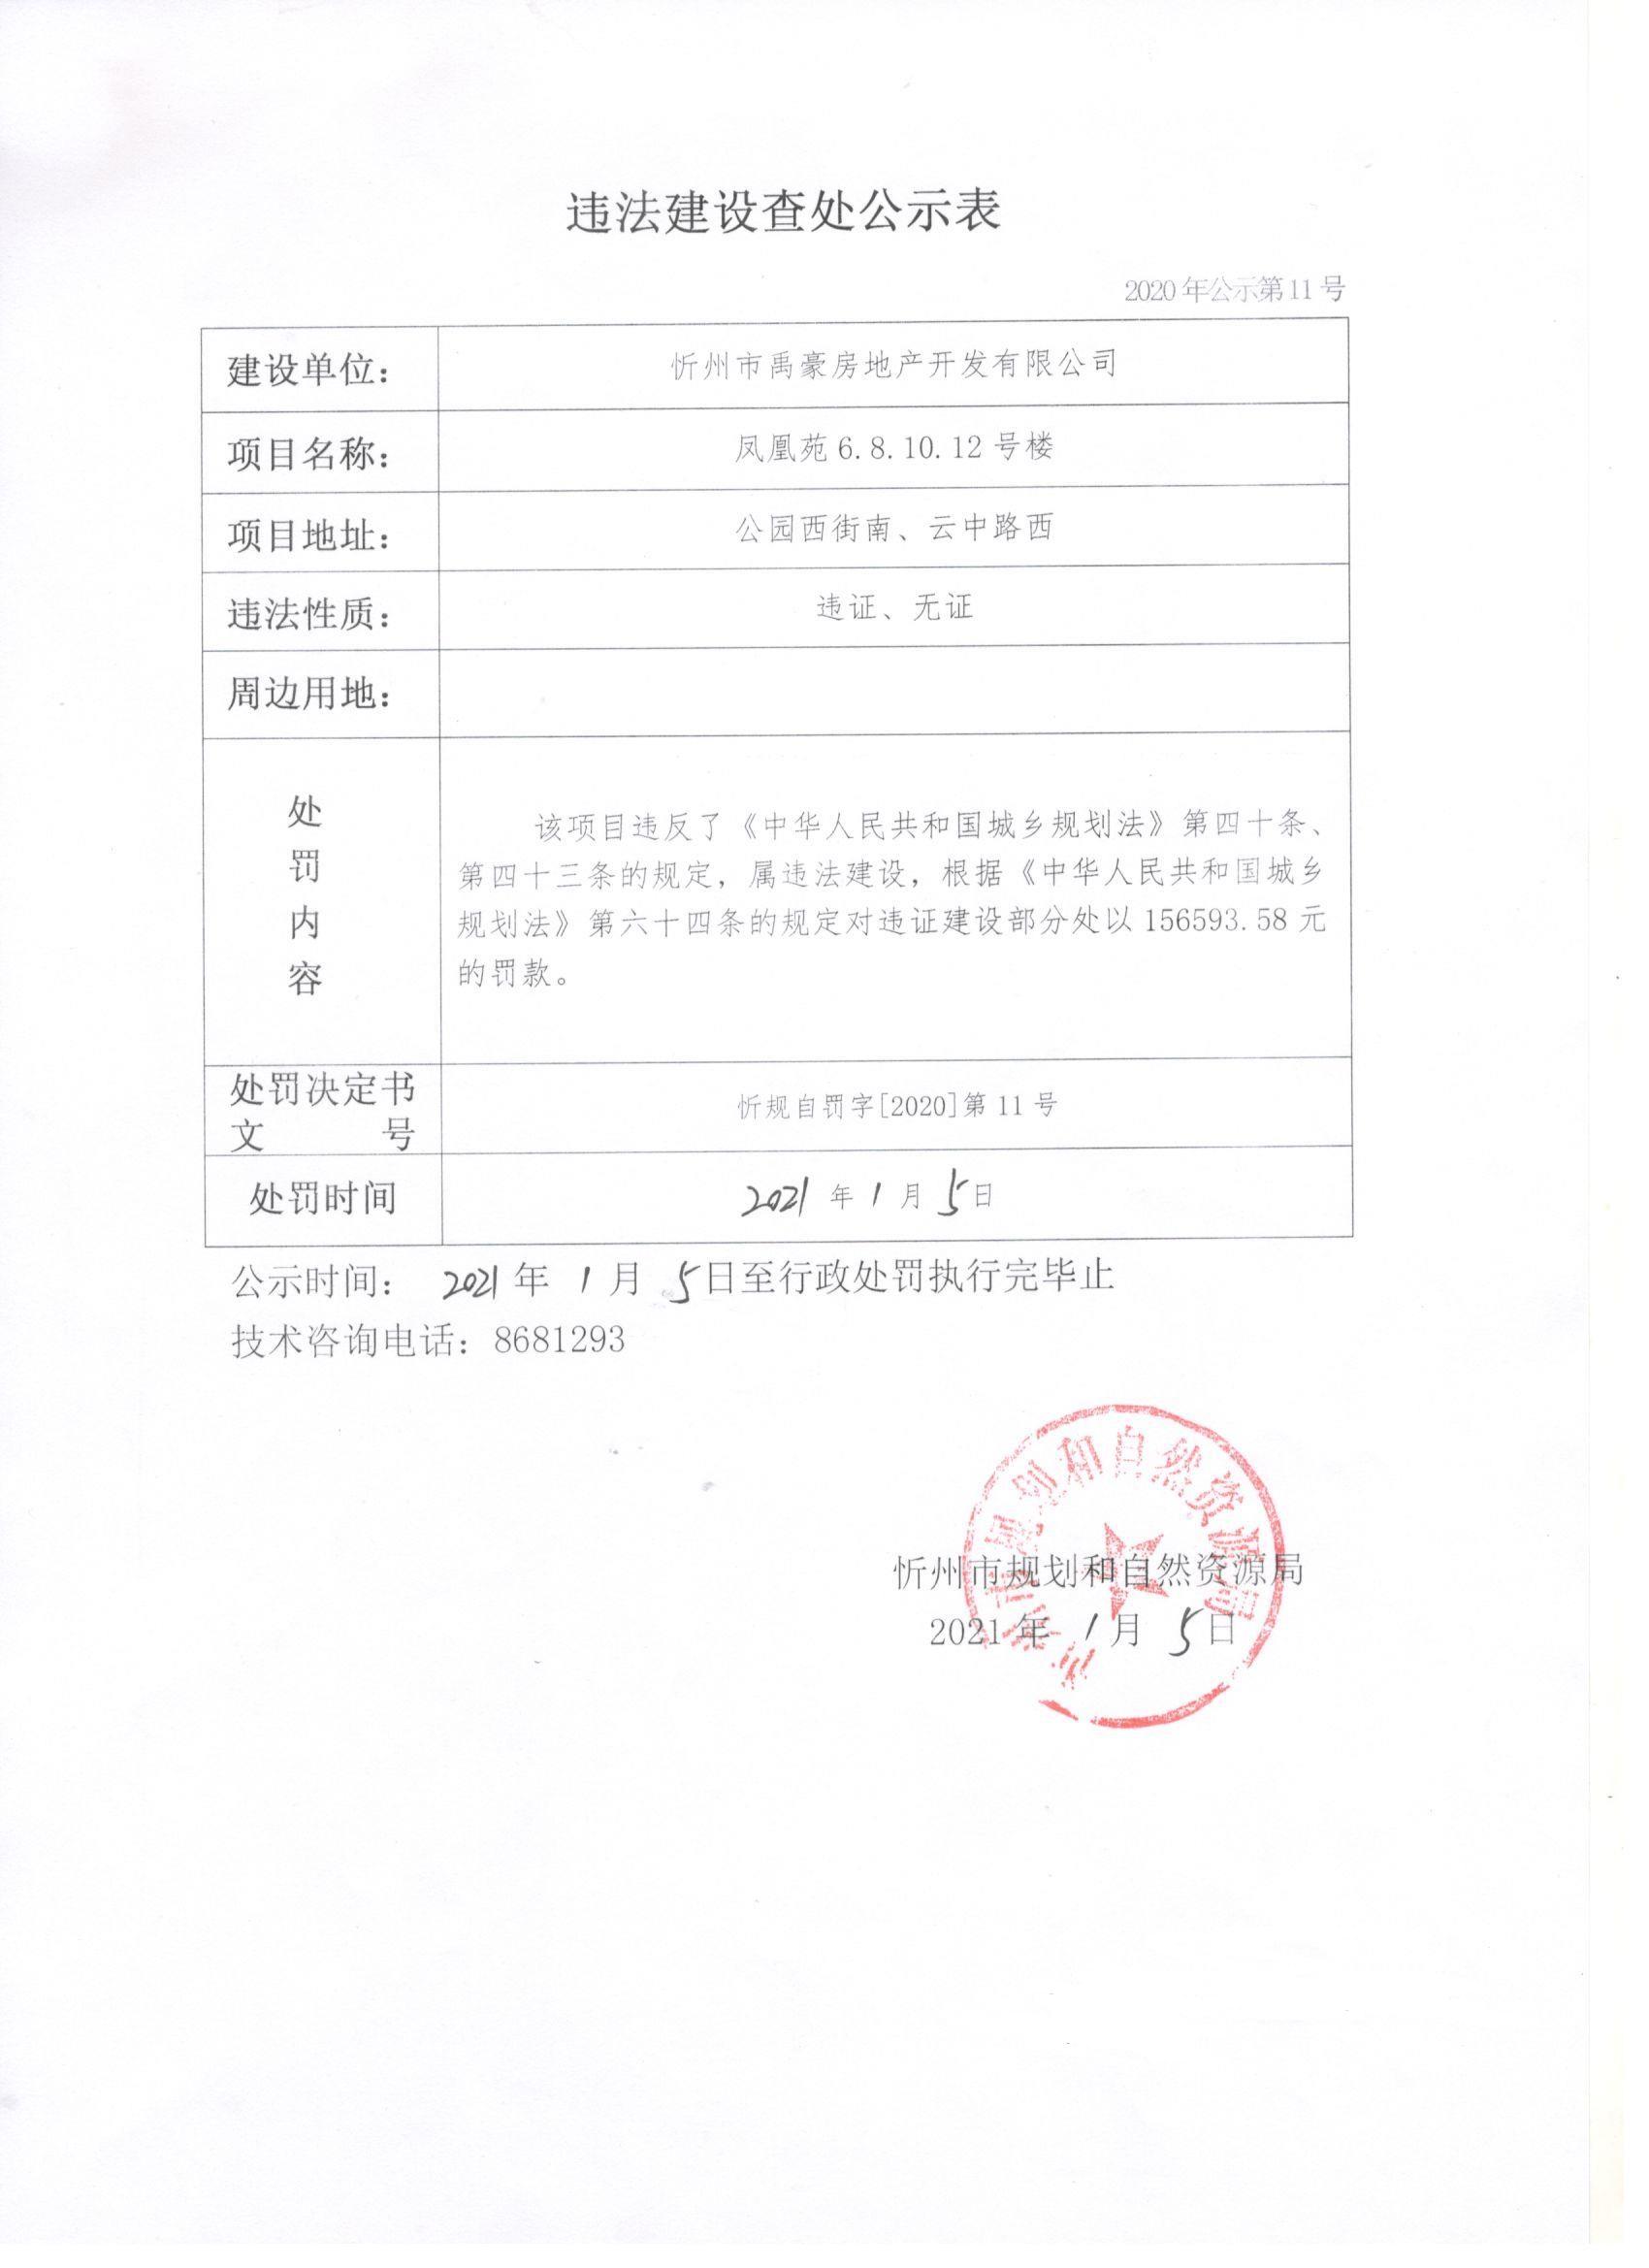 忻州市禹豪房地产开发有限公司违法建设受处罚